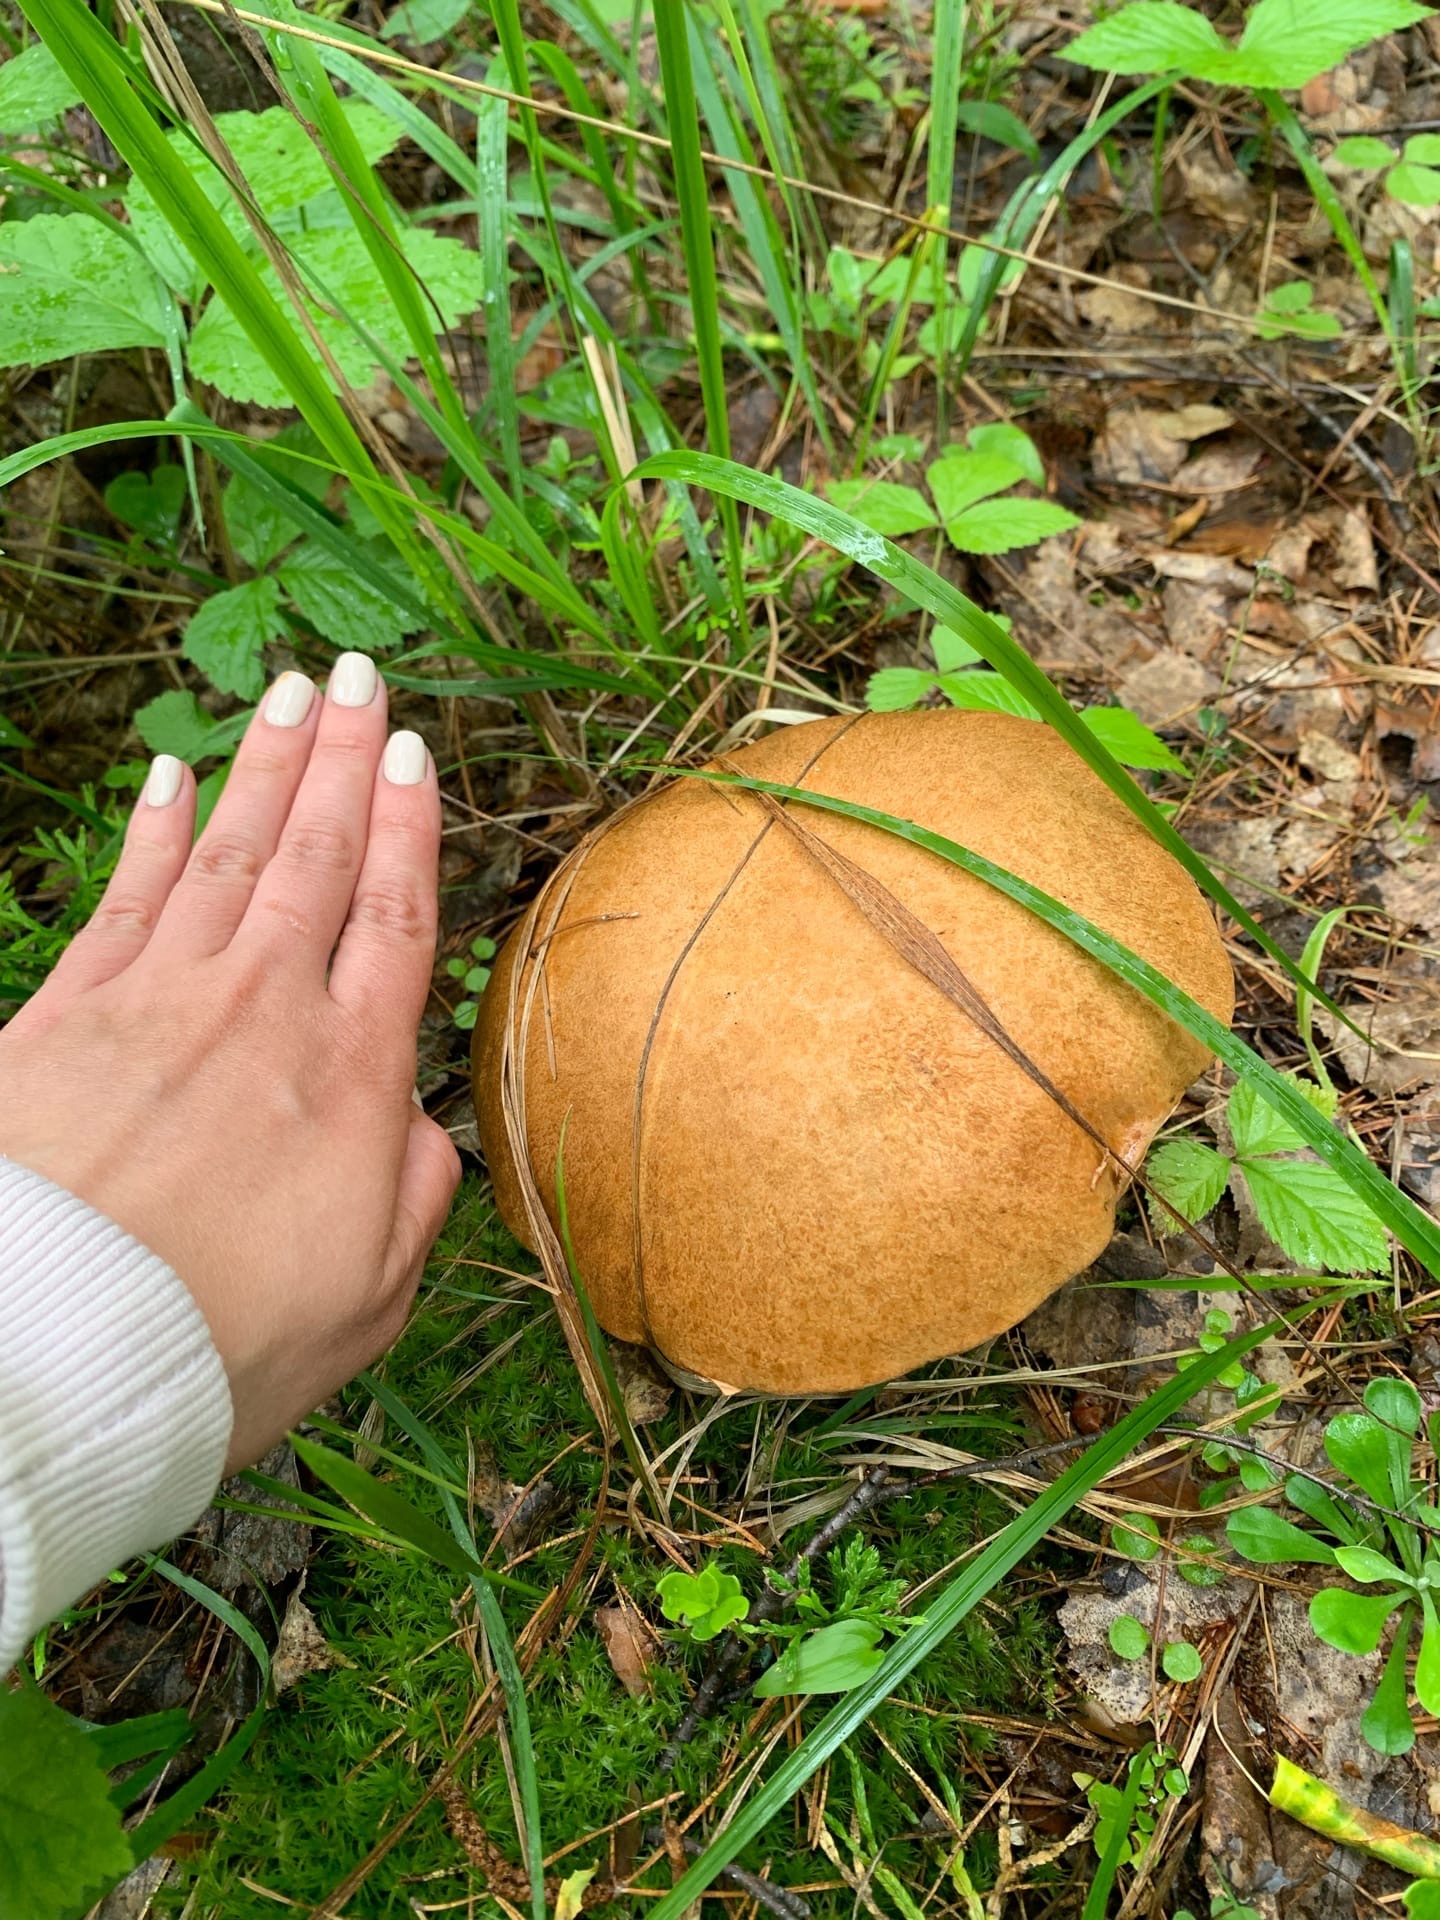 Прятаться в траве огромному грибу непросто — он больше руки и хорошо заметен на расстоянии